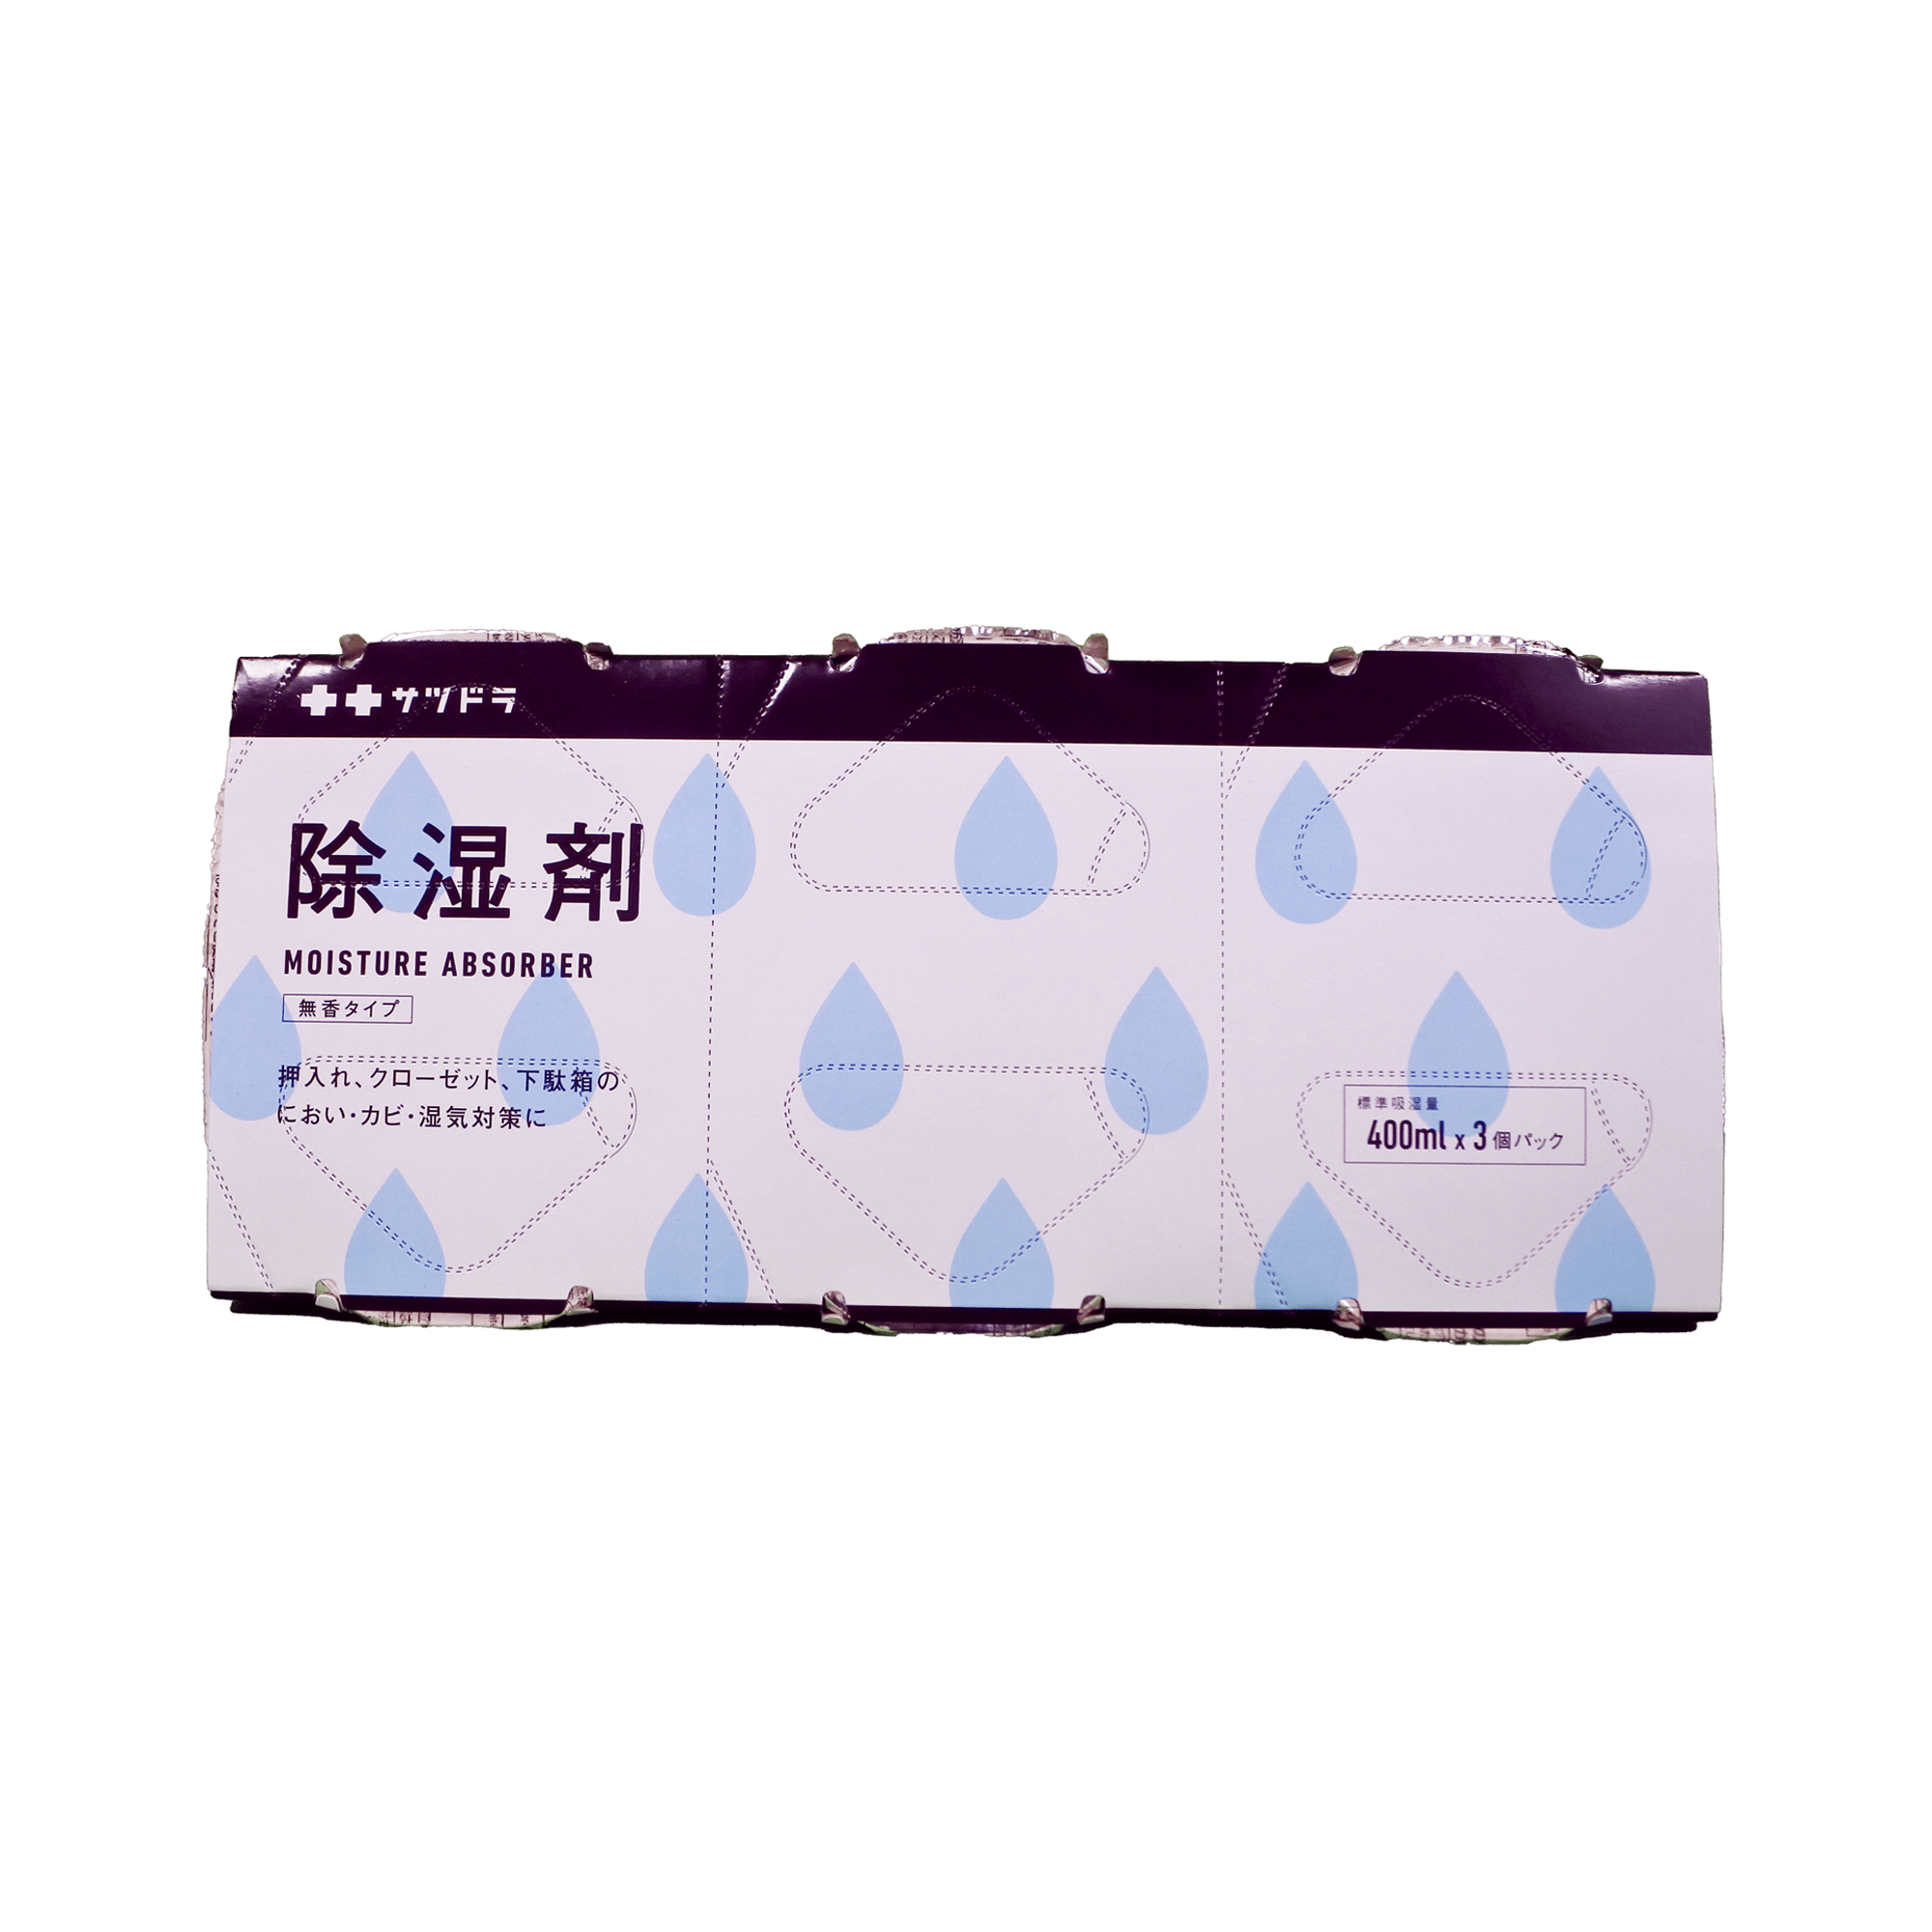 札幌药妆 除湿剂